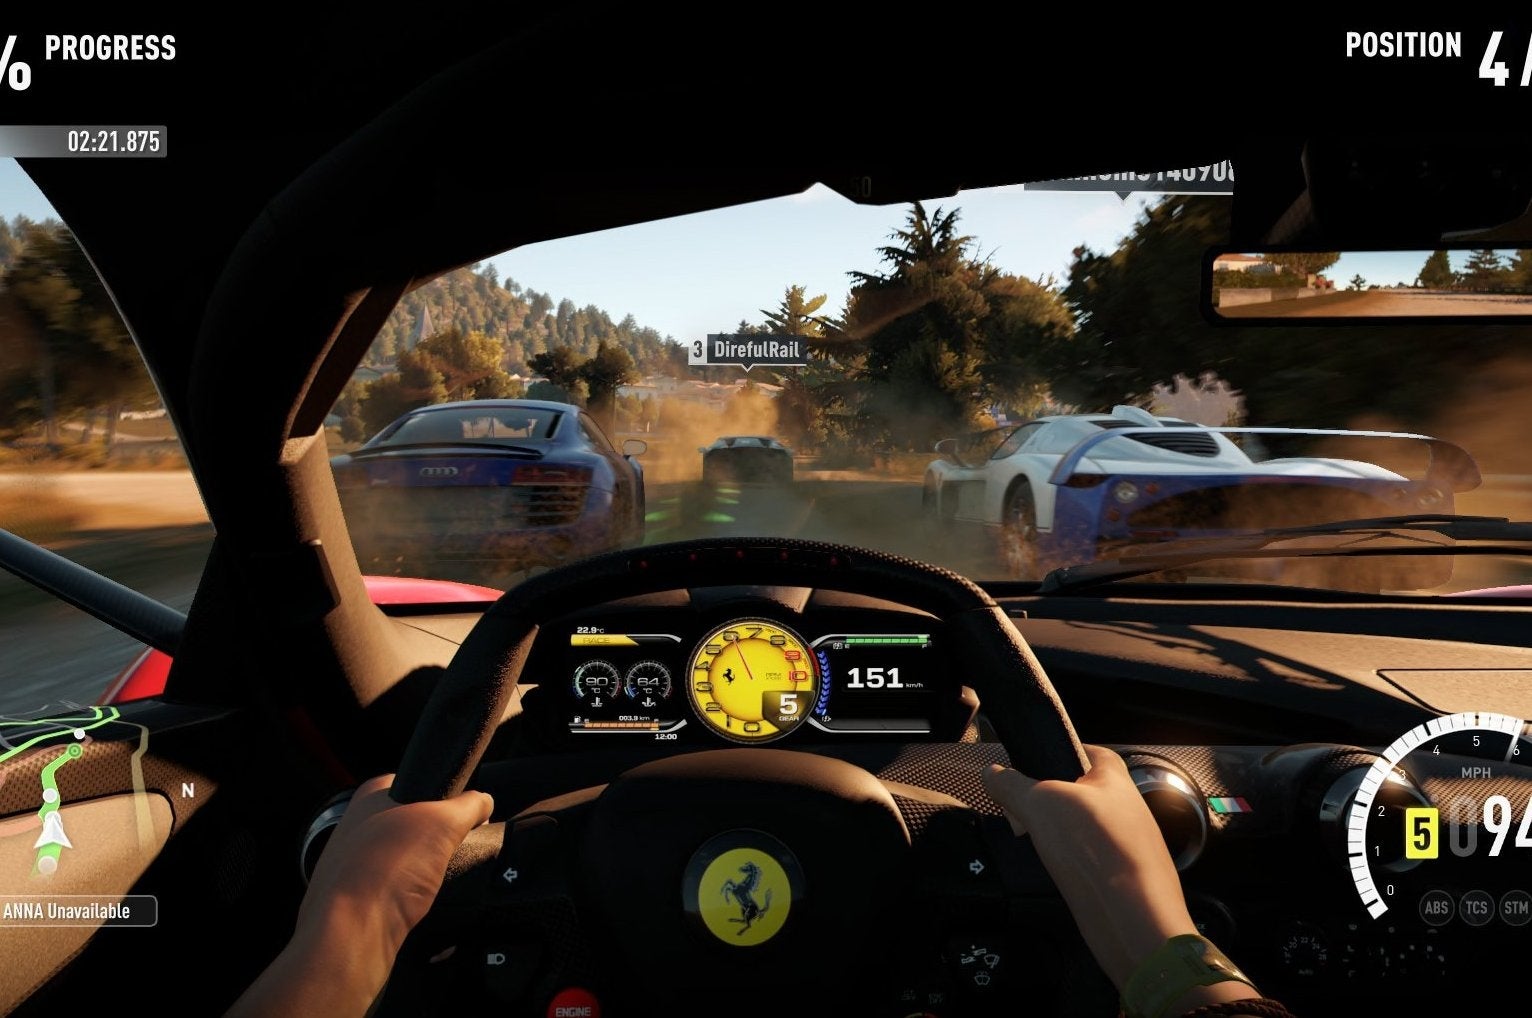 Imagen para Vídeocomparativa de las versiones de Xbox One y Xbox 360 de Forza Horizon 2